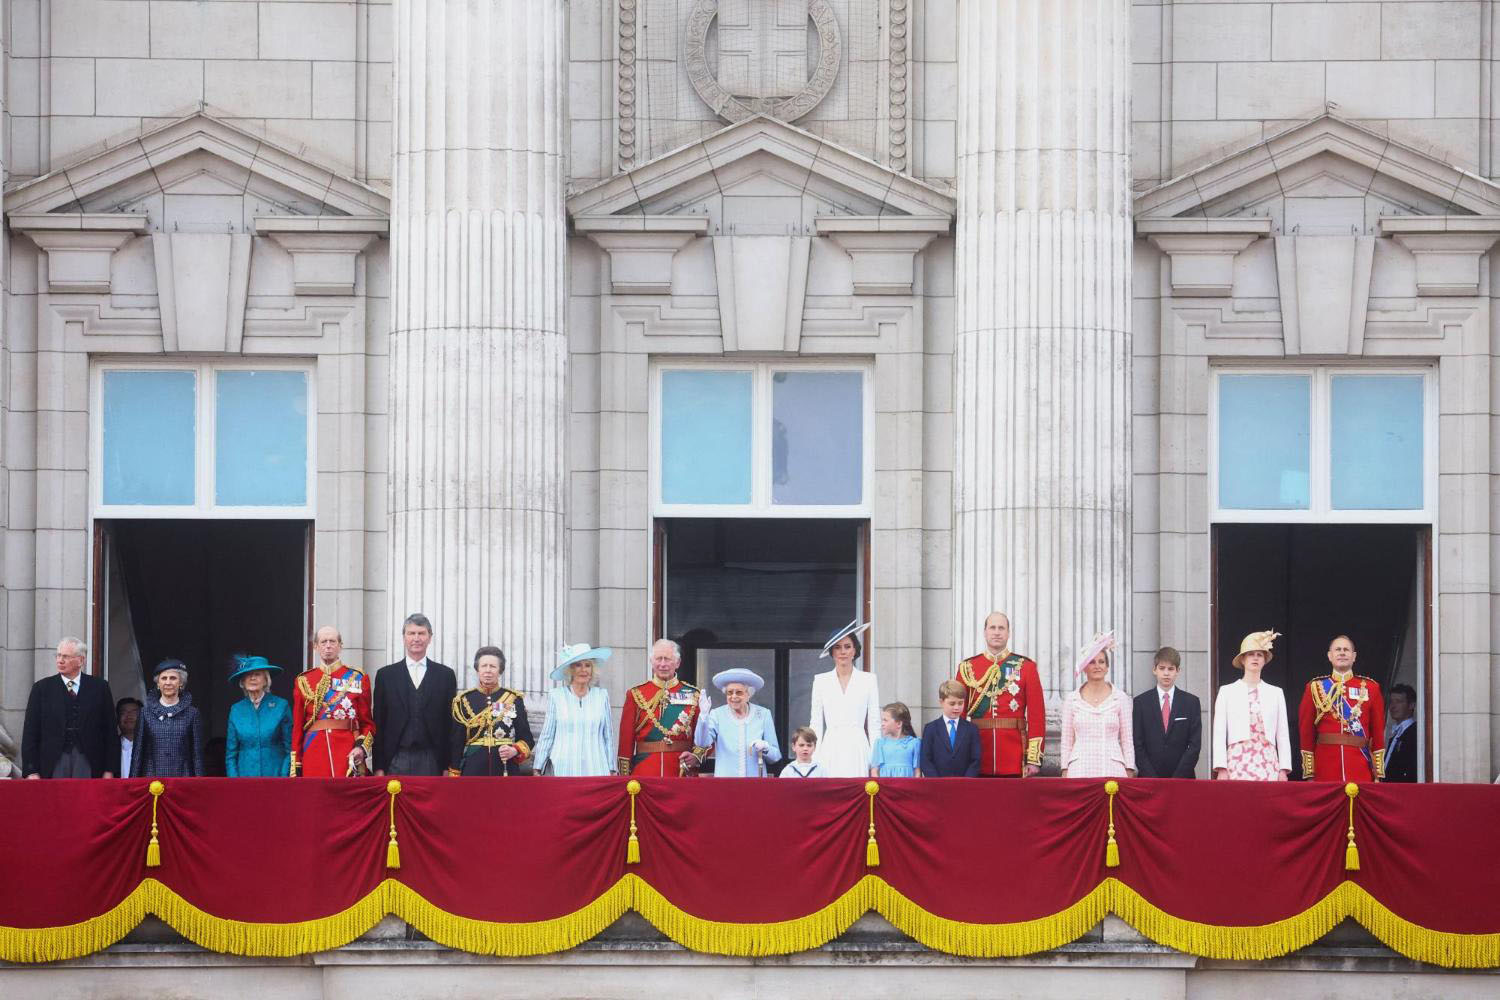 Buckingham Palace Balcony The Royal Family